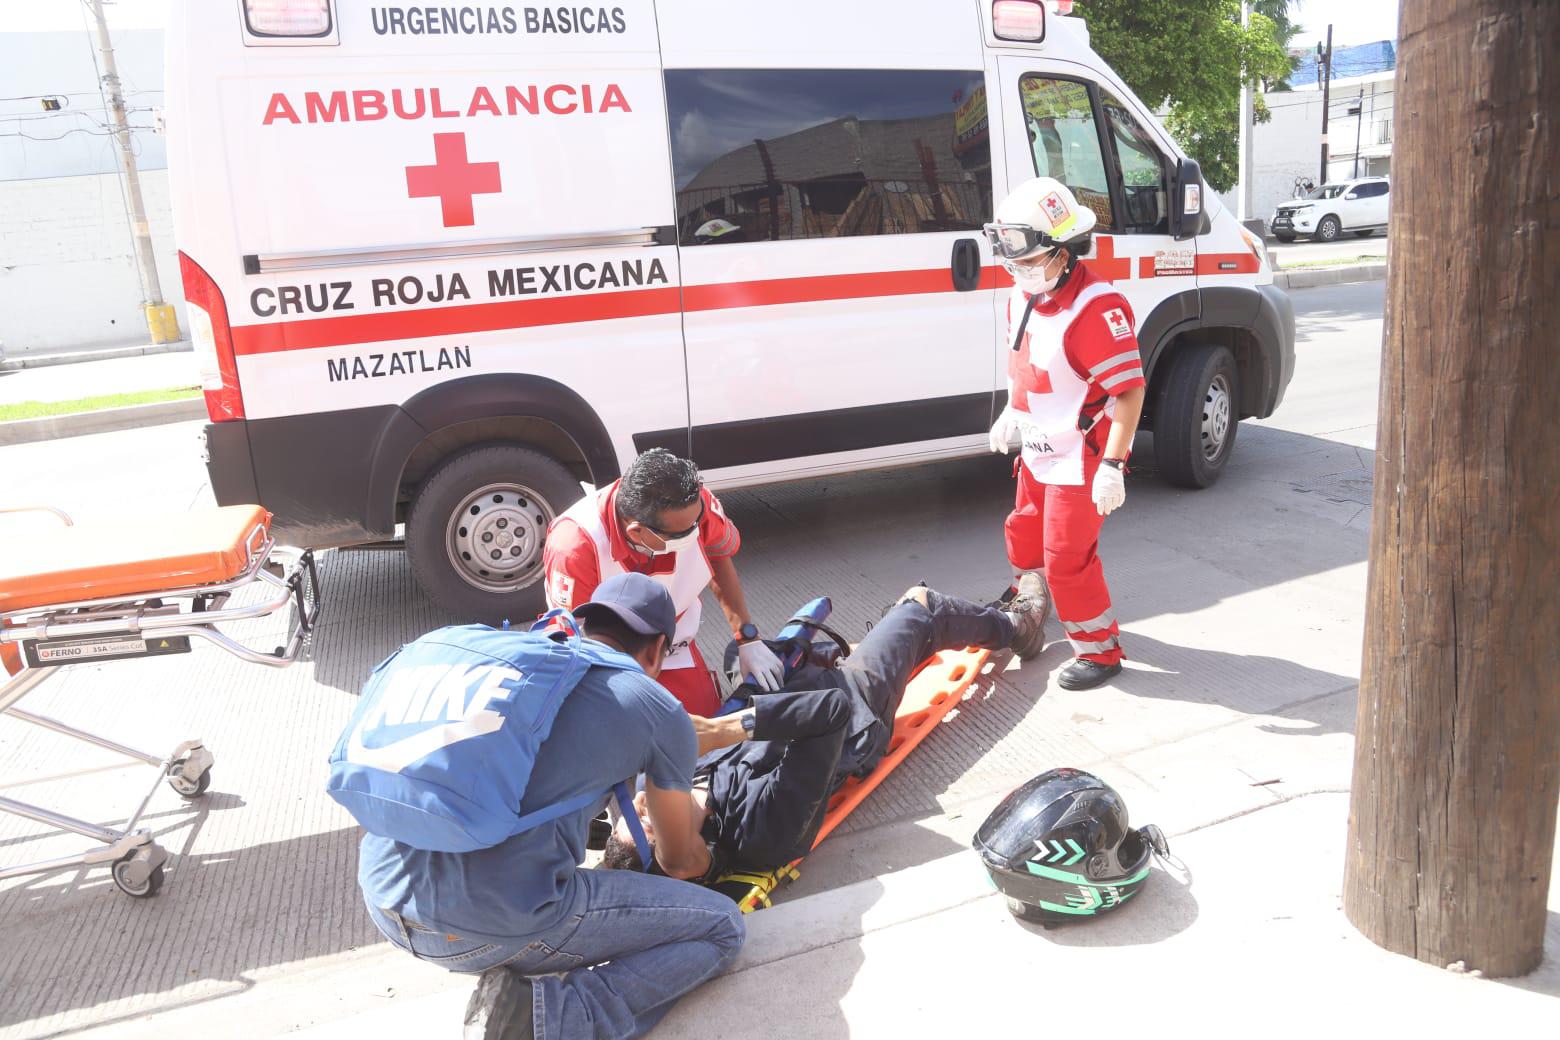 $!Camioneta derriba a ciclista y motociclista en retorno de Mazatlán